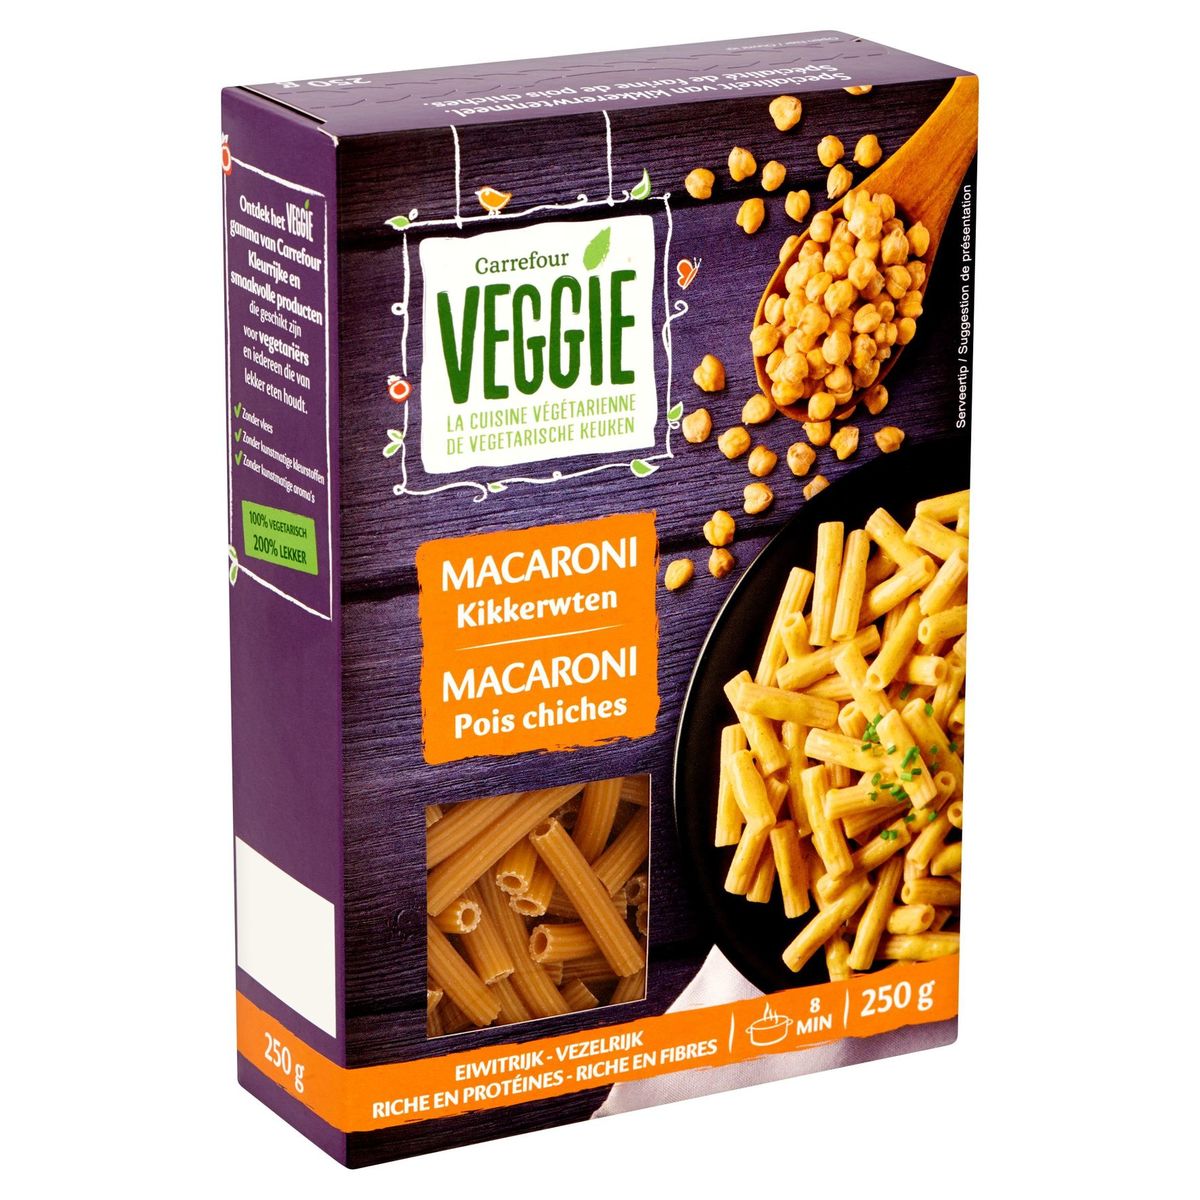 Carrefour Veggie Macaroni Kikkerwten 250 g